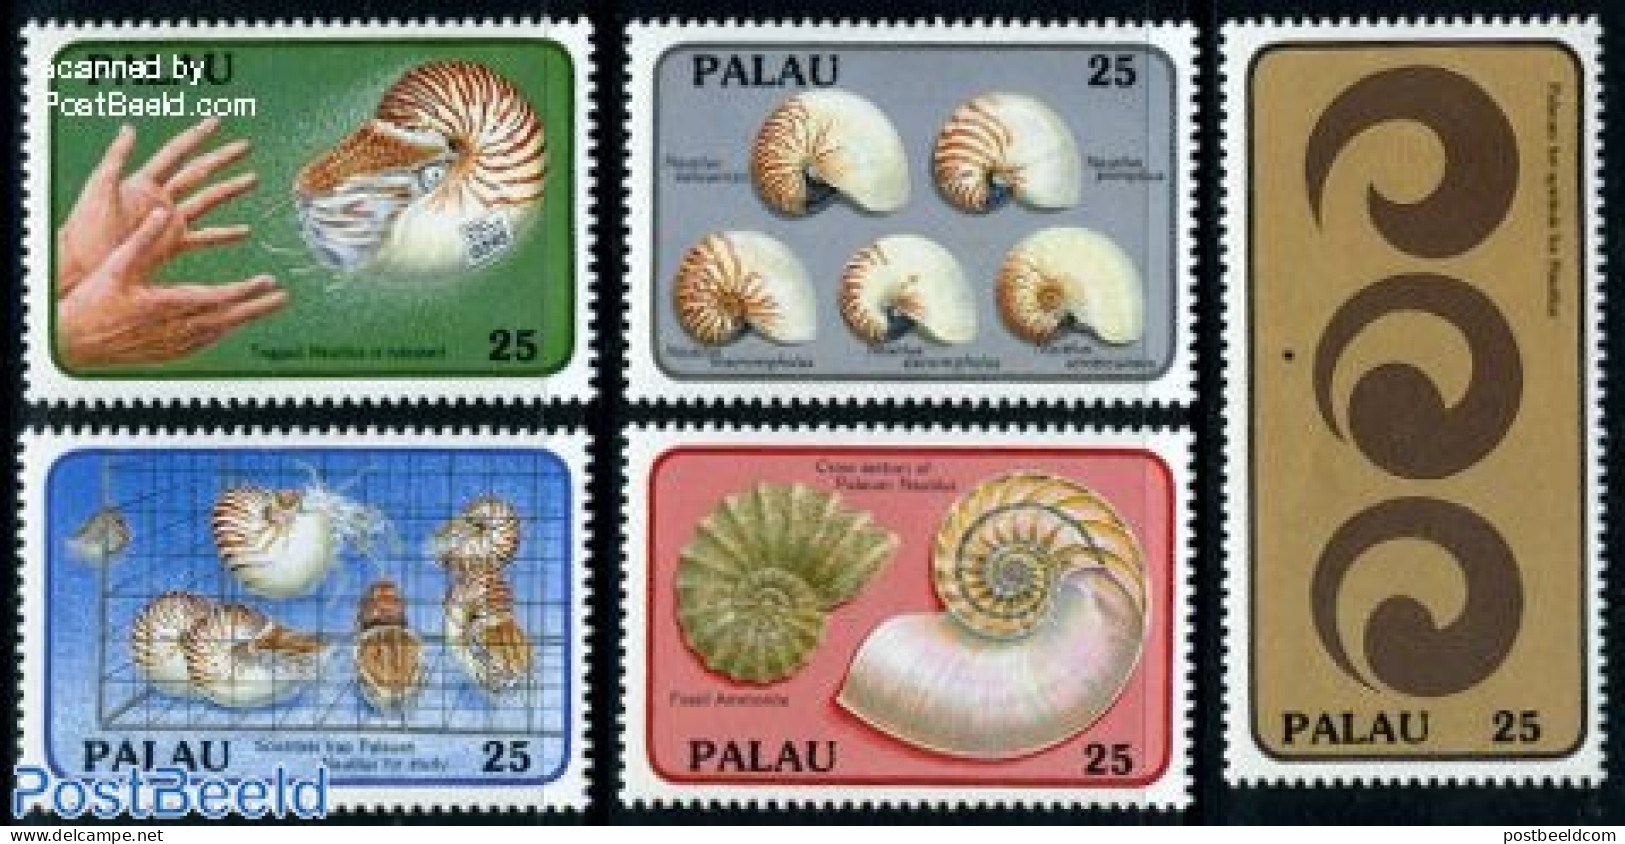 Palau 1988 Shells 5v, Mint NH, Nature - Shells & Crustaceans - Mundo Aquatico